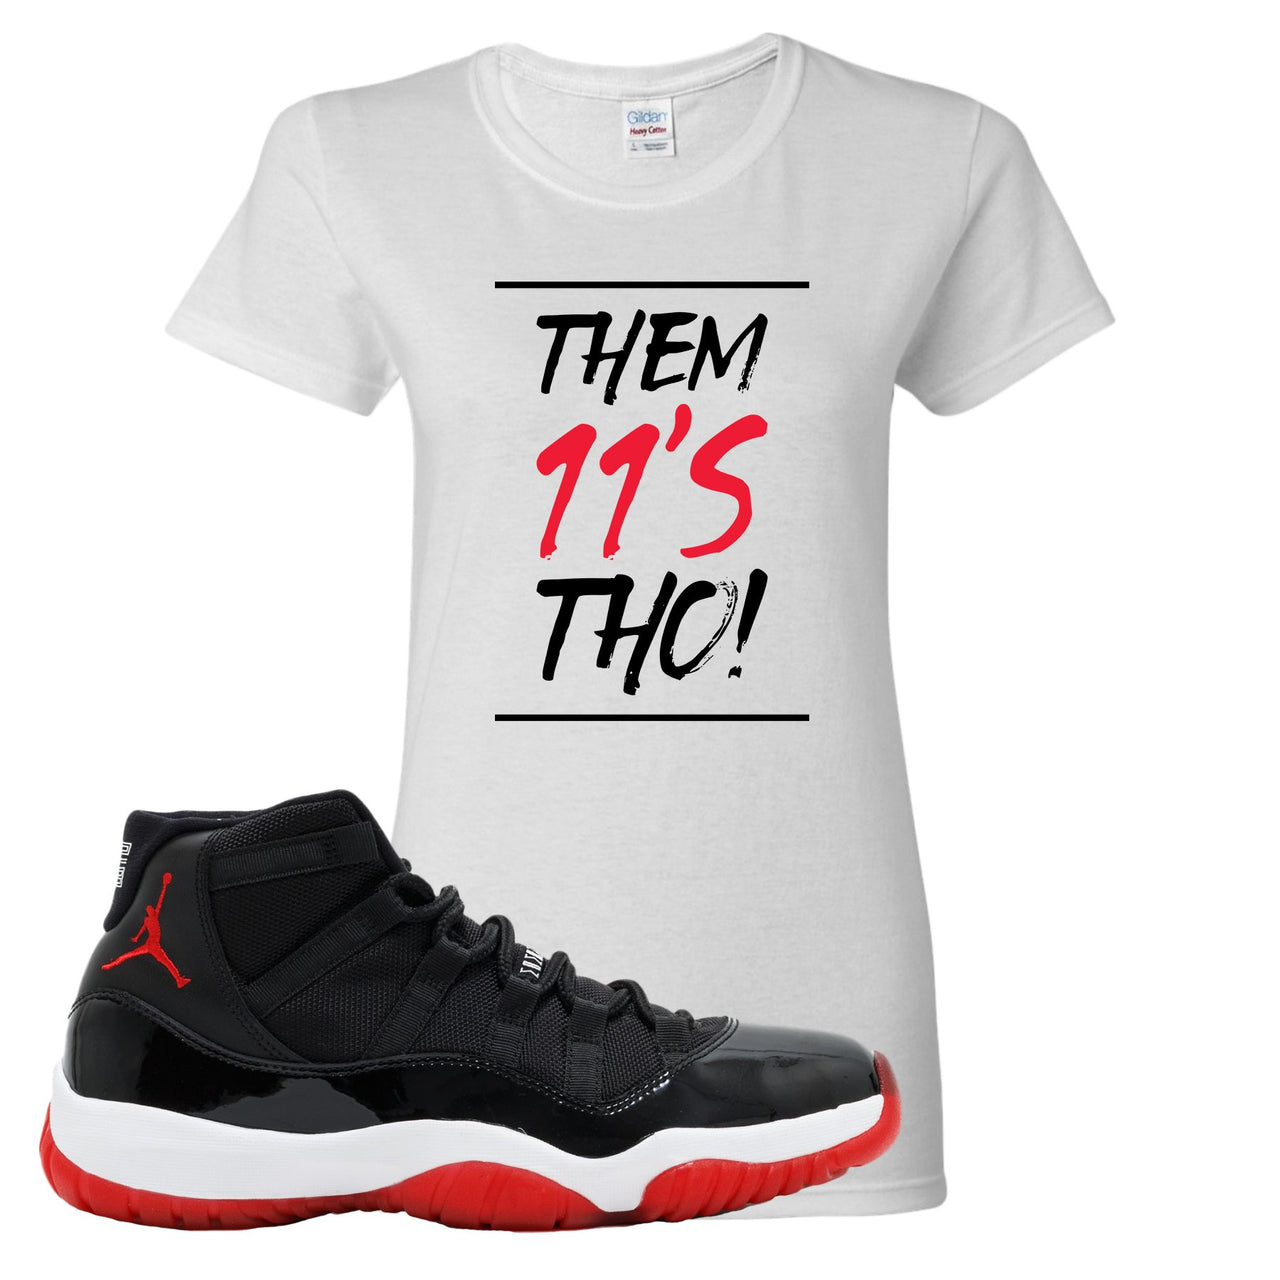 Jordan 11 Bred Them 11s Tho! White Sneaker Hook Up Women's T-Shirt